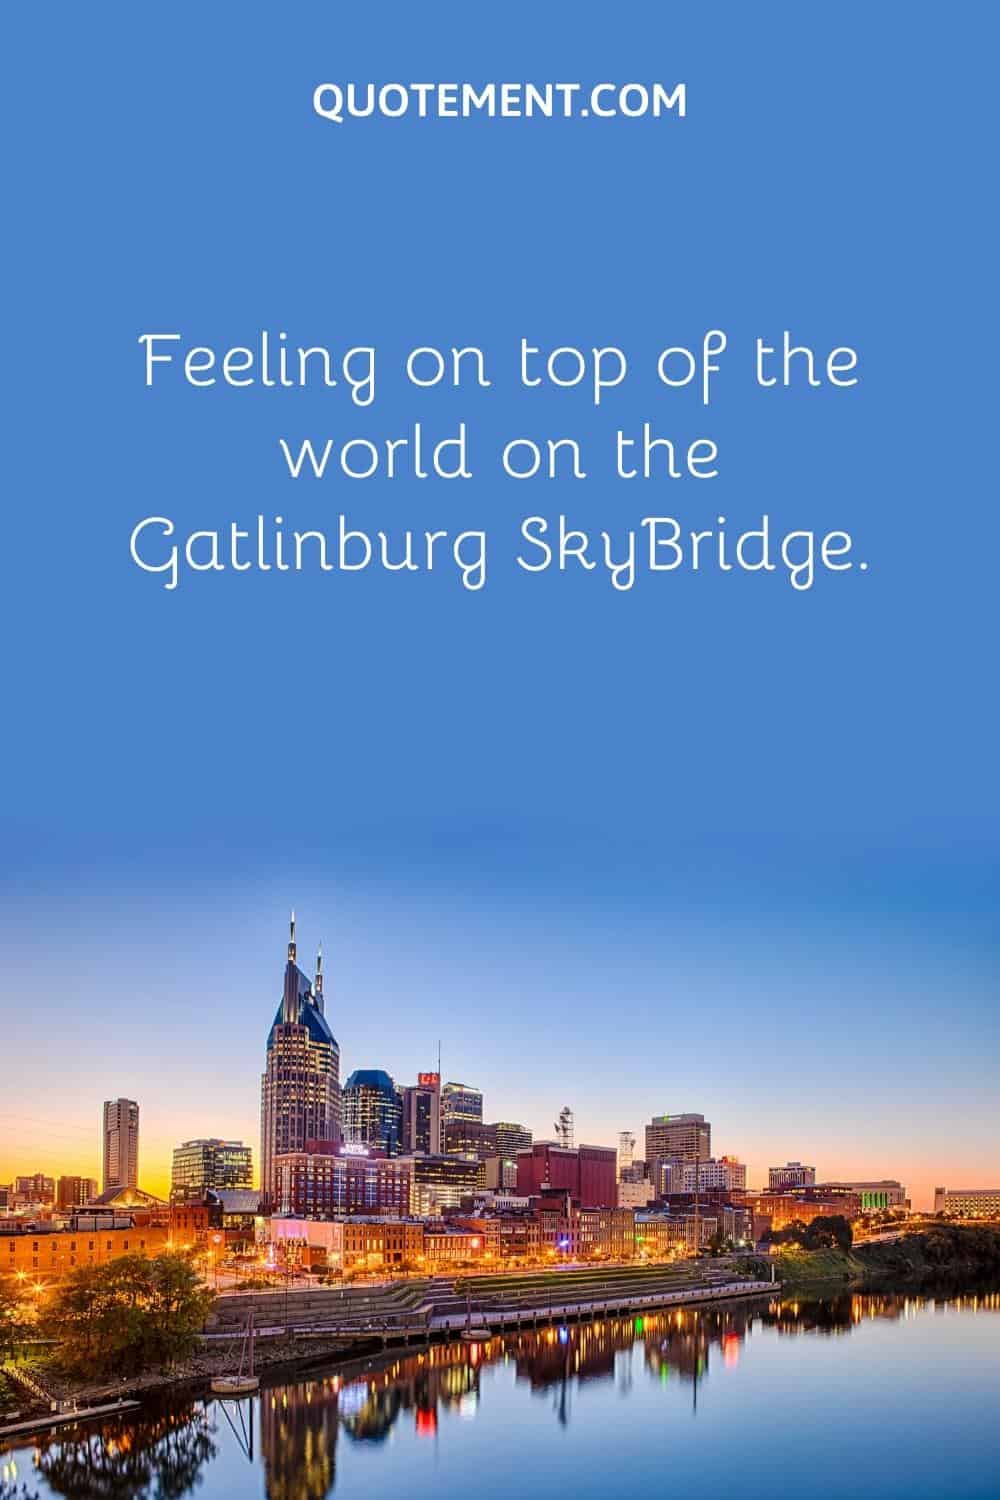 Feeling on top of the world on the Gatlinburg SkyBridge.